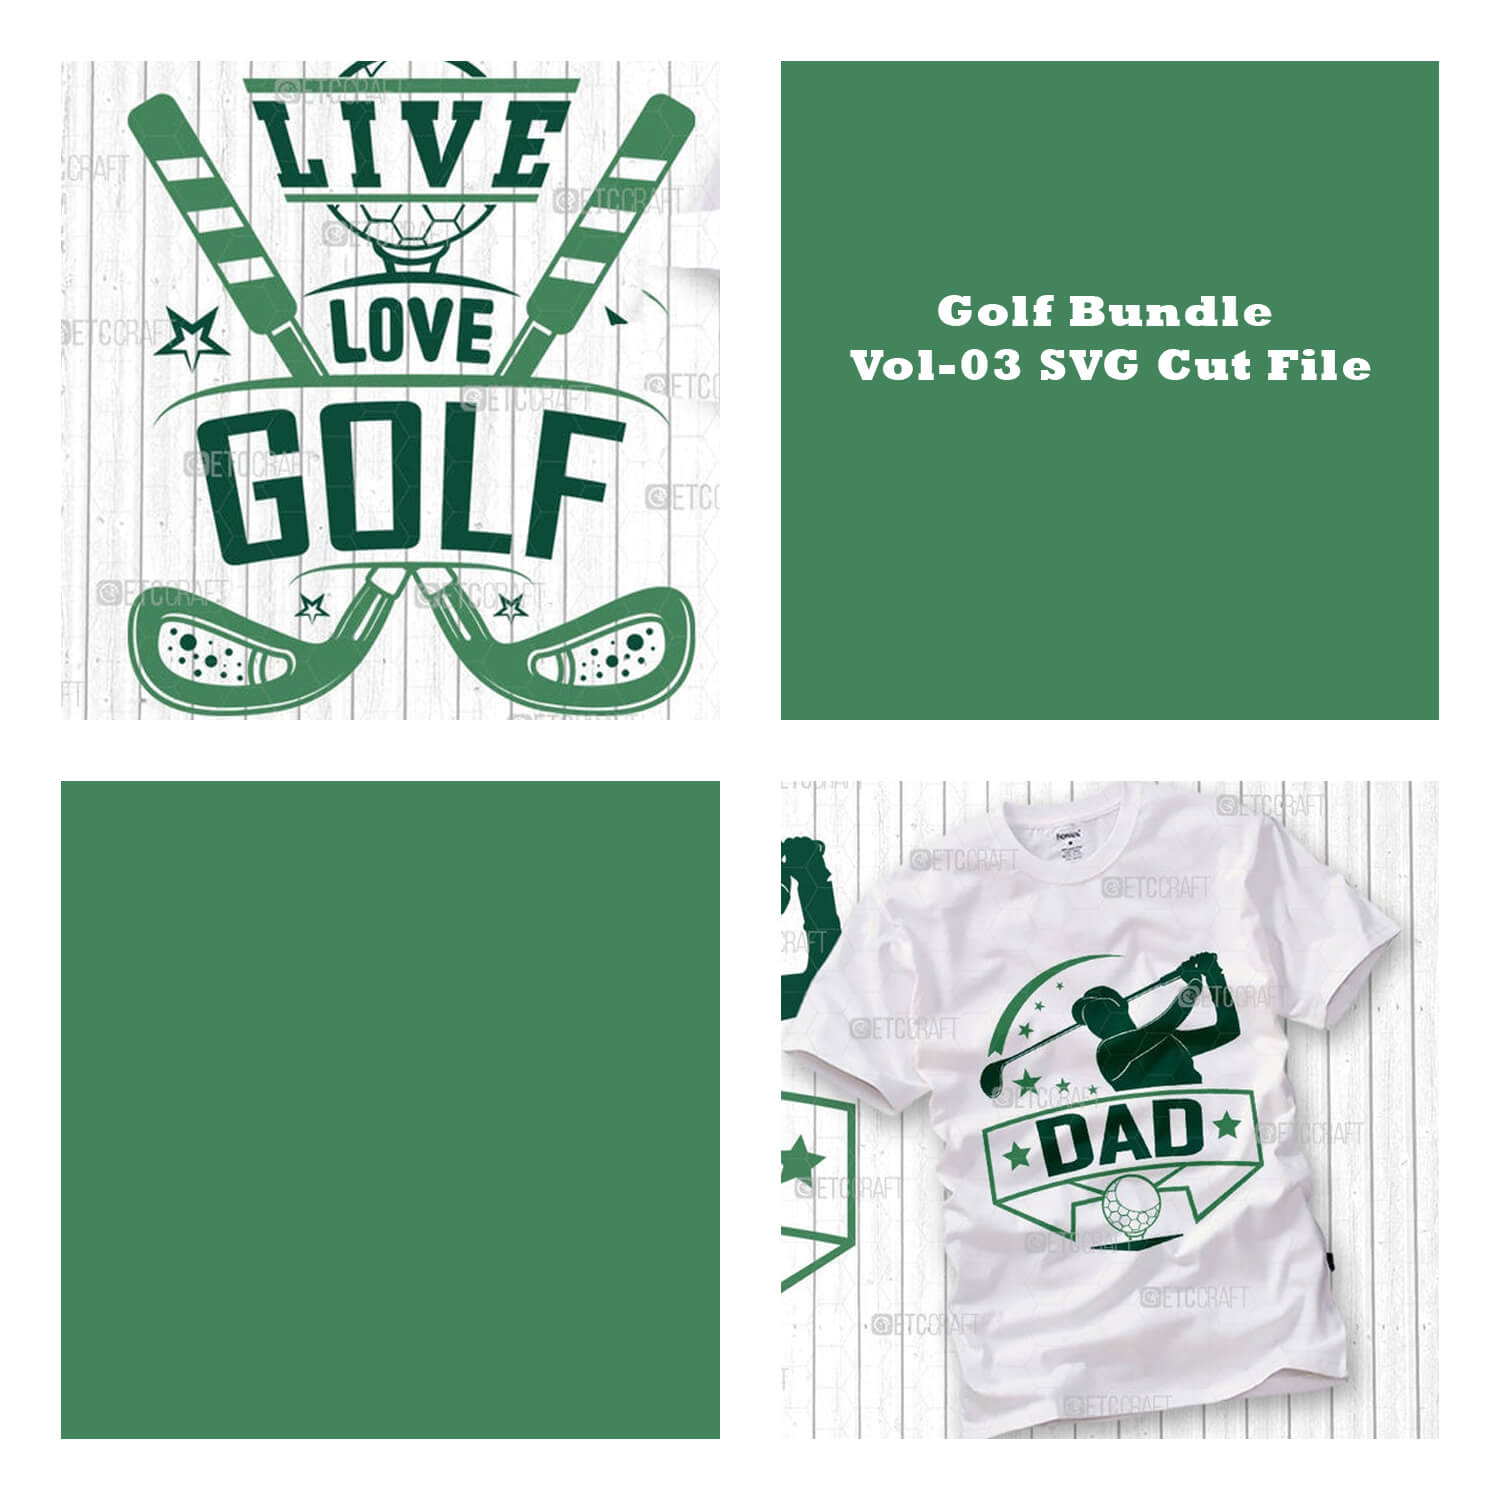 Four cubic images with the inscription: Golf Bundle Vol-03 SVG Cut File.